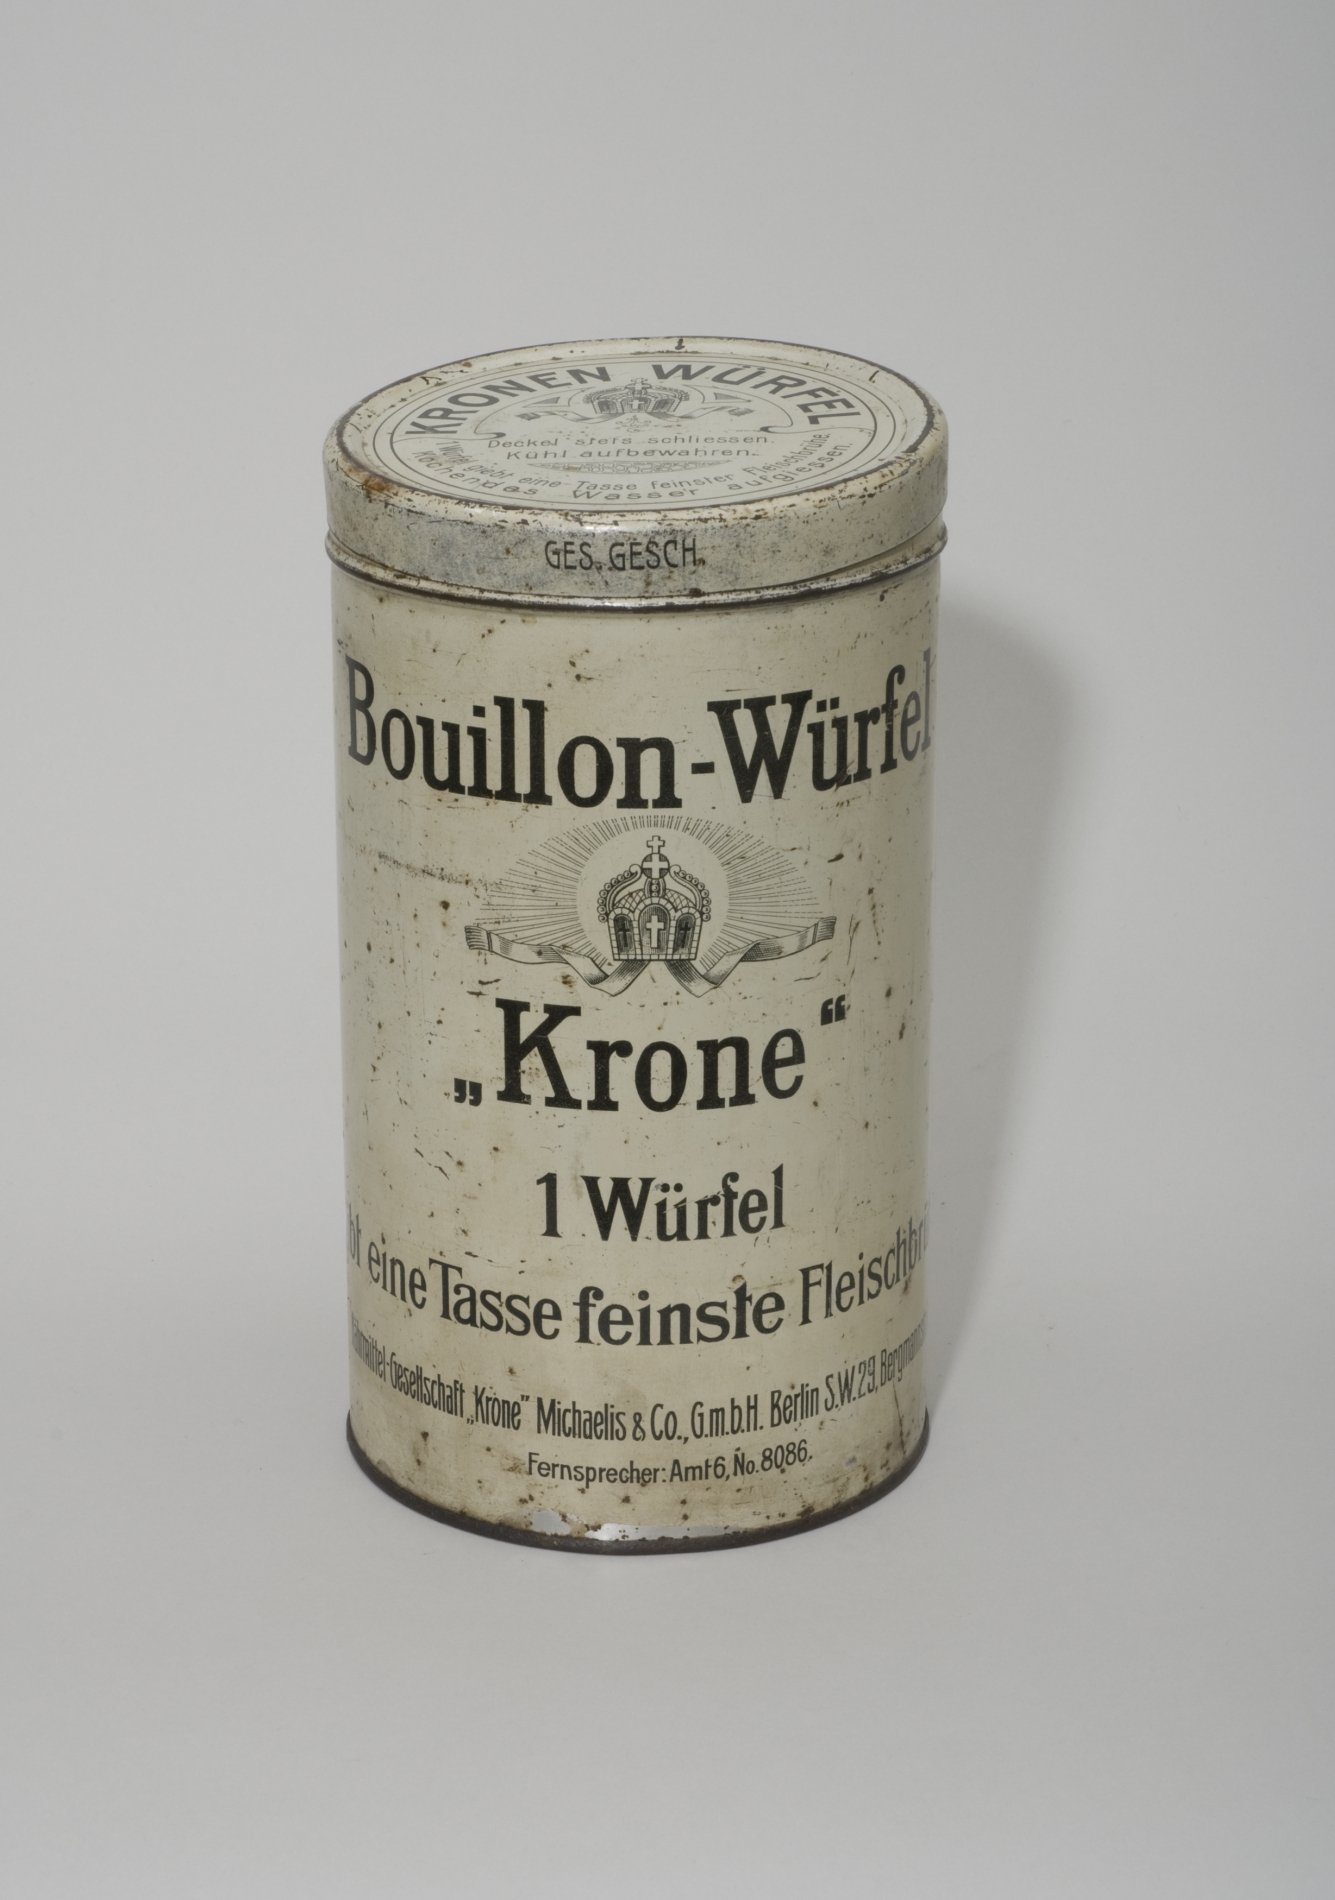 Vorratsdose "Krone Bouillon-Würfel" (Stiftung Domäne Dahlem - Landgut und Museum, Weiternutzung nur mit Genehmigung des Museums CC BY-NC-SA)